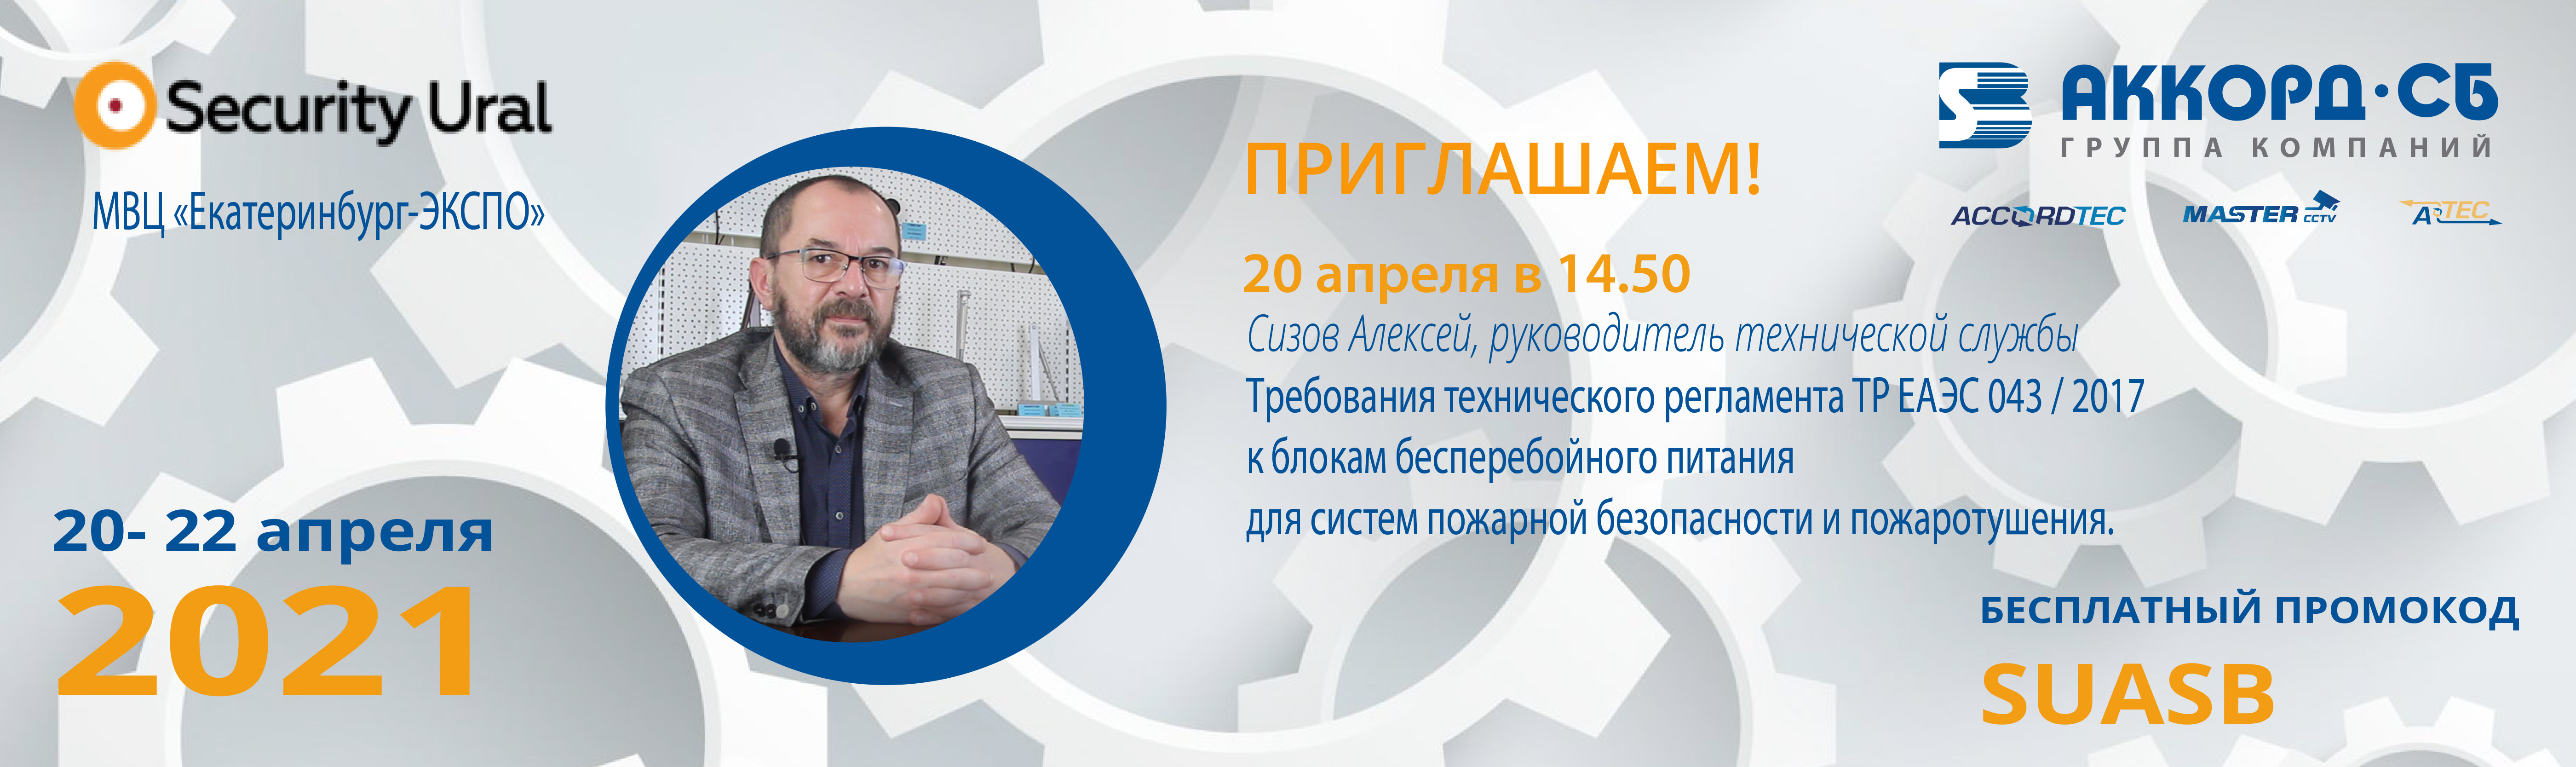 Приглашаем на презентацию блоков питания ТР Accordtec с сертификатом ЕАЭС на выставке Security Ural!